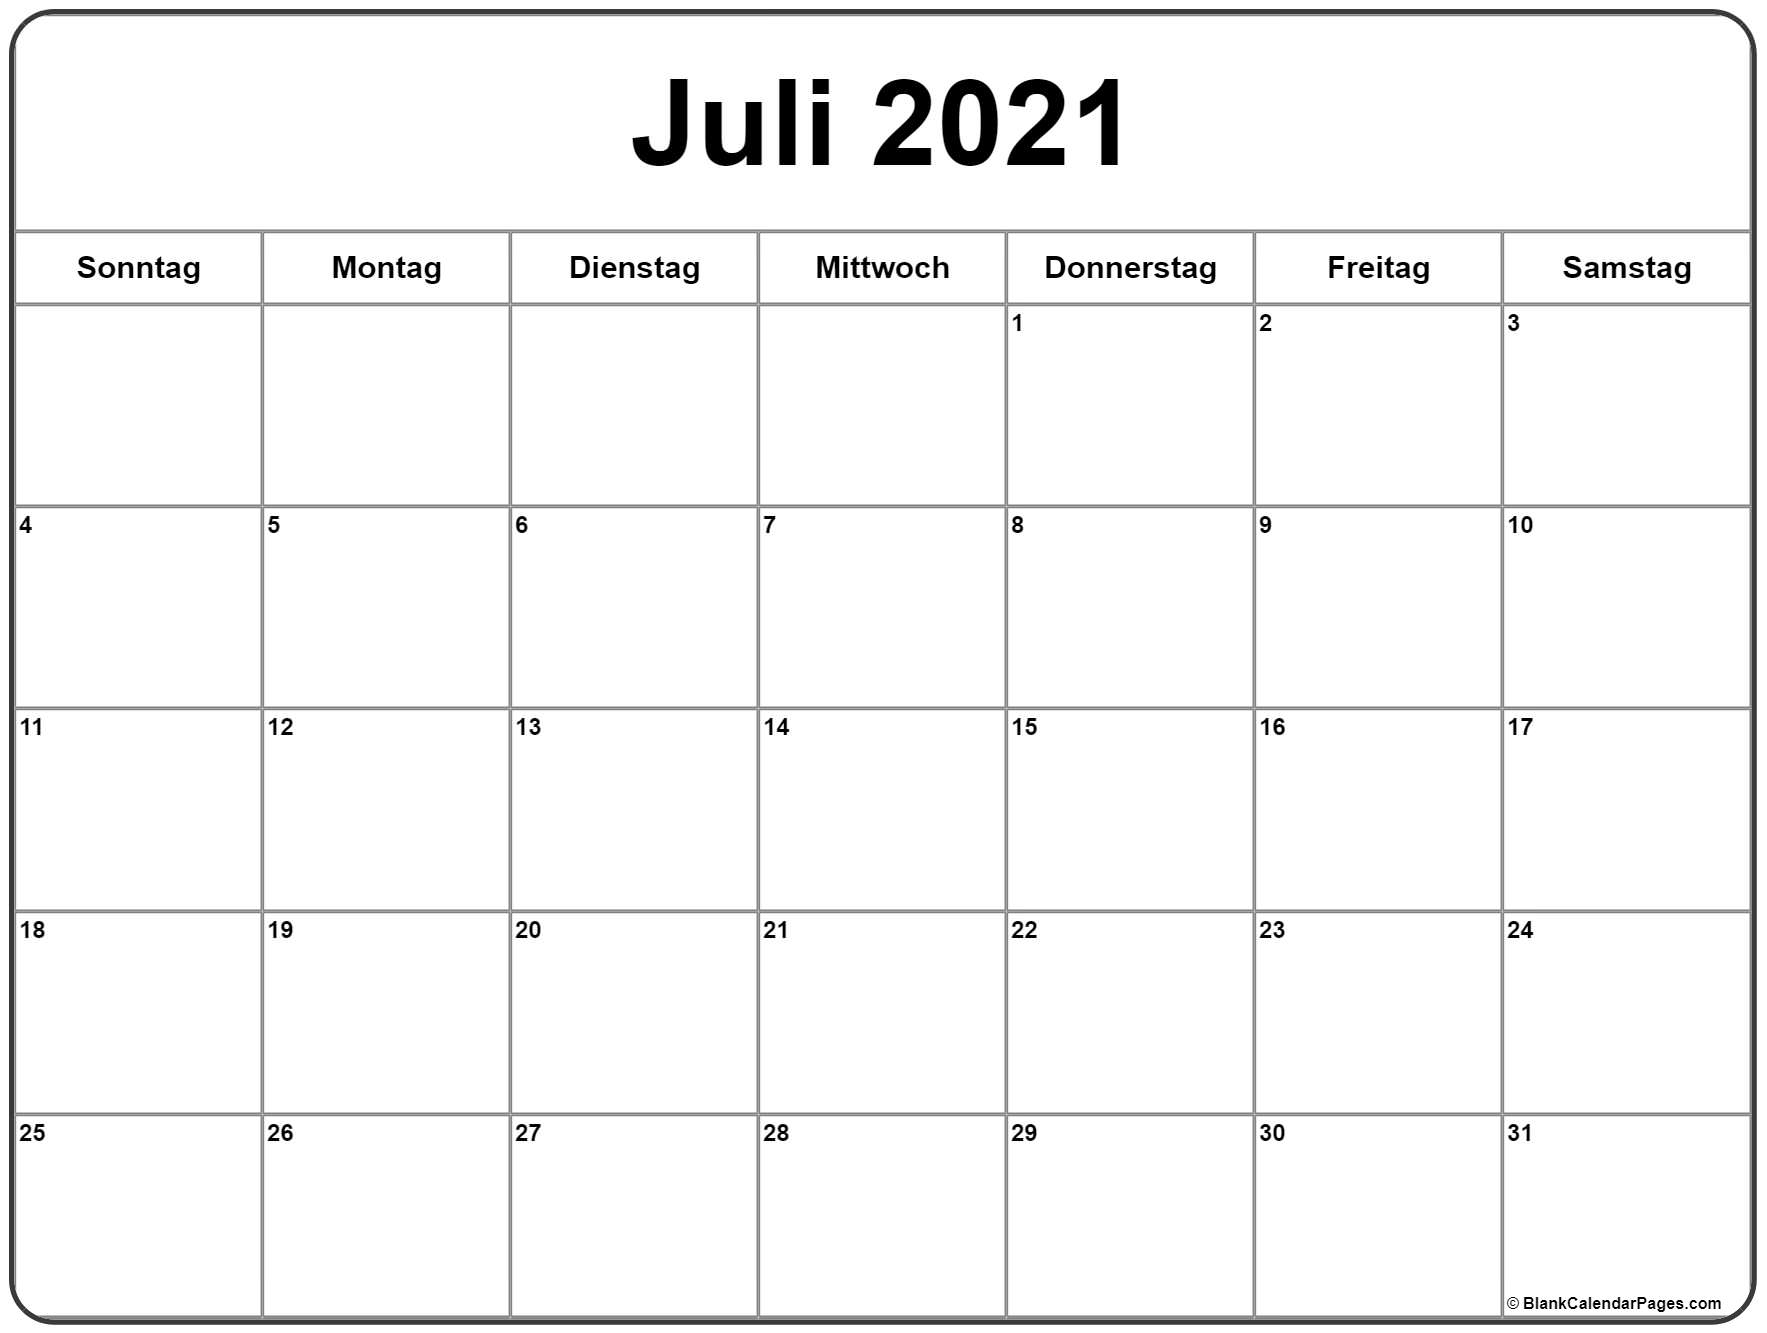 Get Juli 2021 Kalender